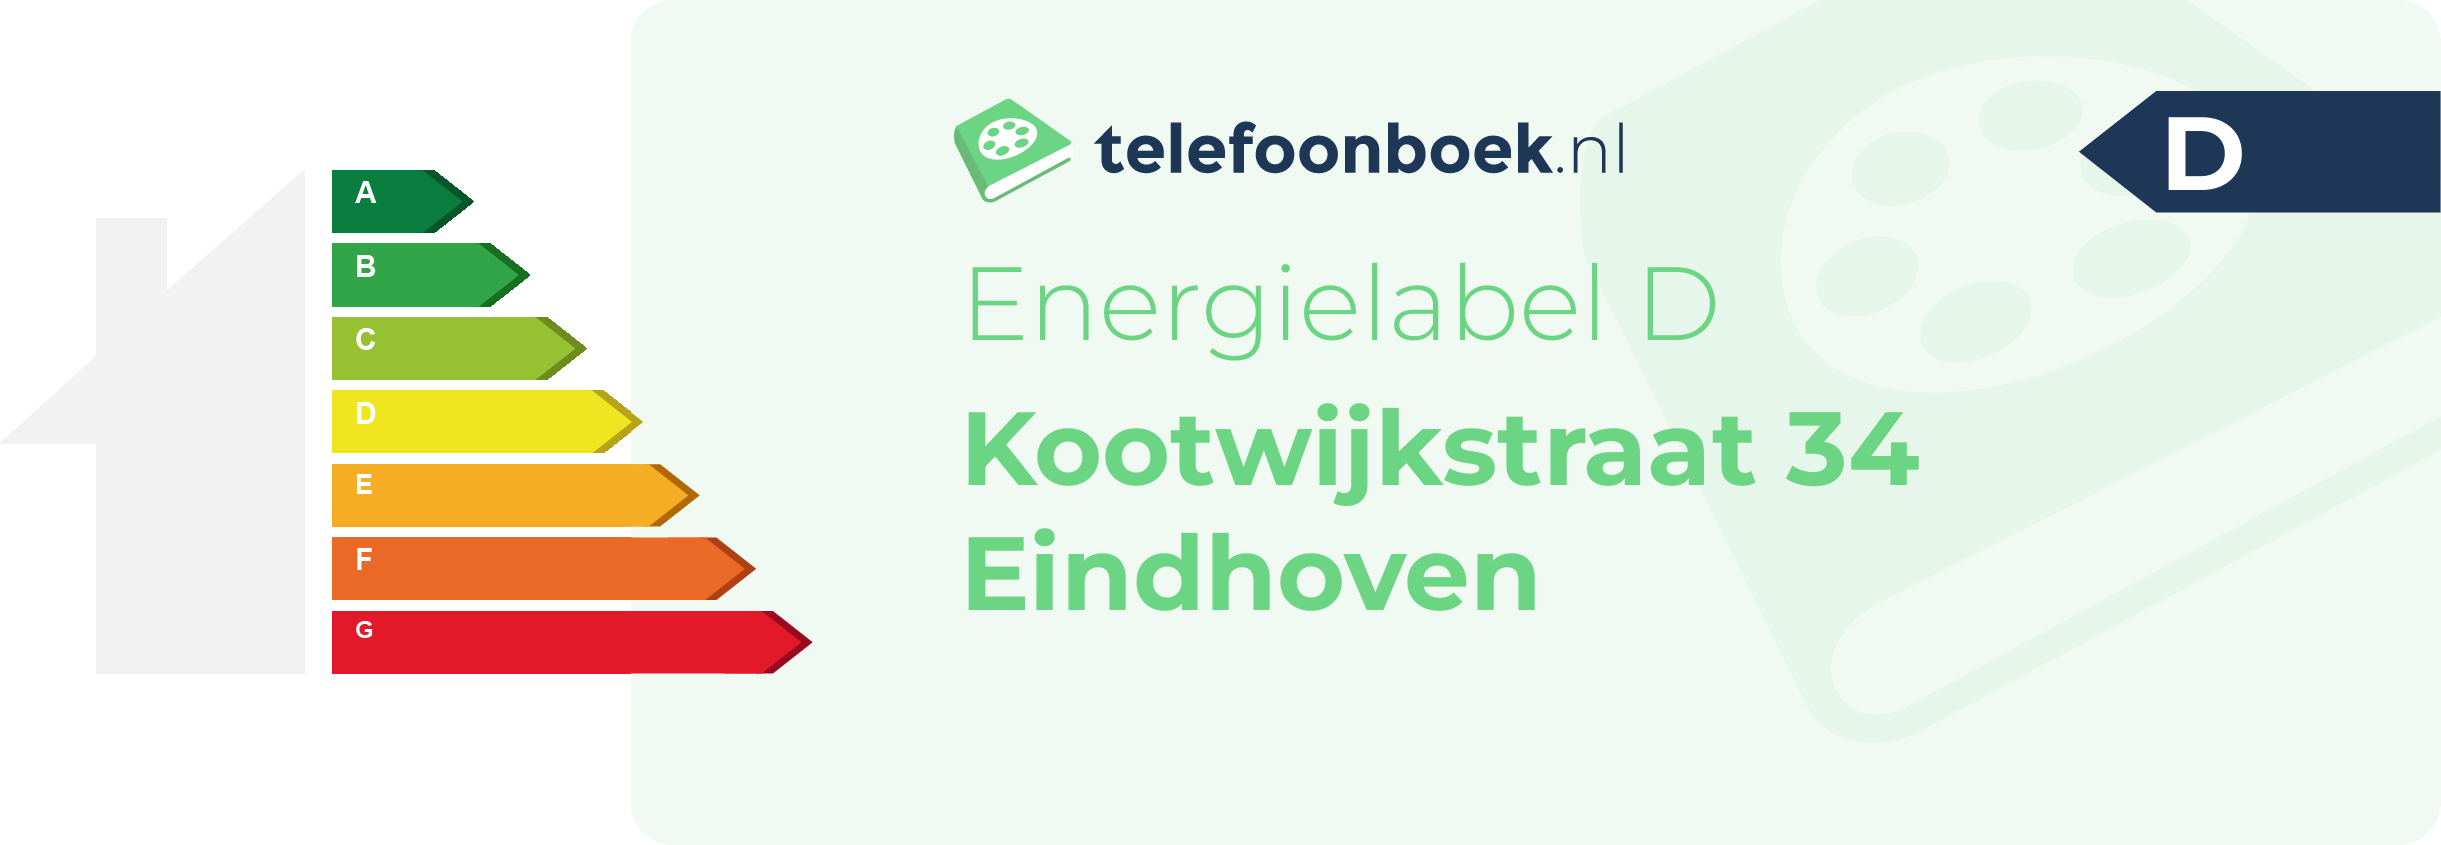 Energielabel Kootwijkstraat 34 Eindhoven